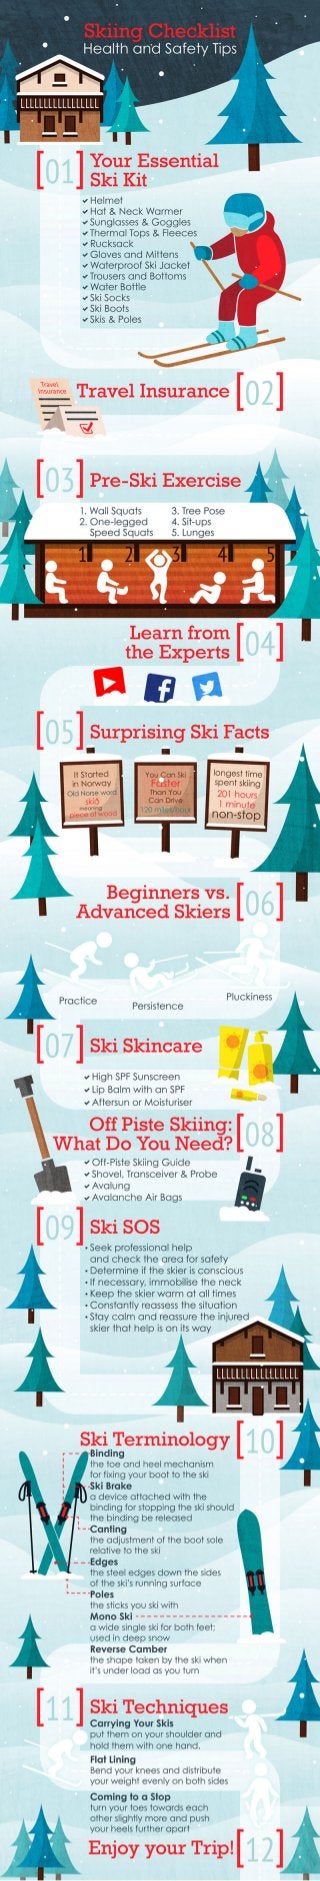 Ski Bonjour's Ultimate Skiing Checklist